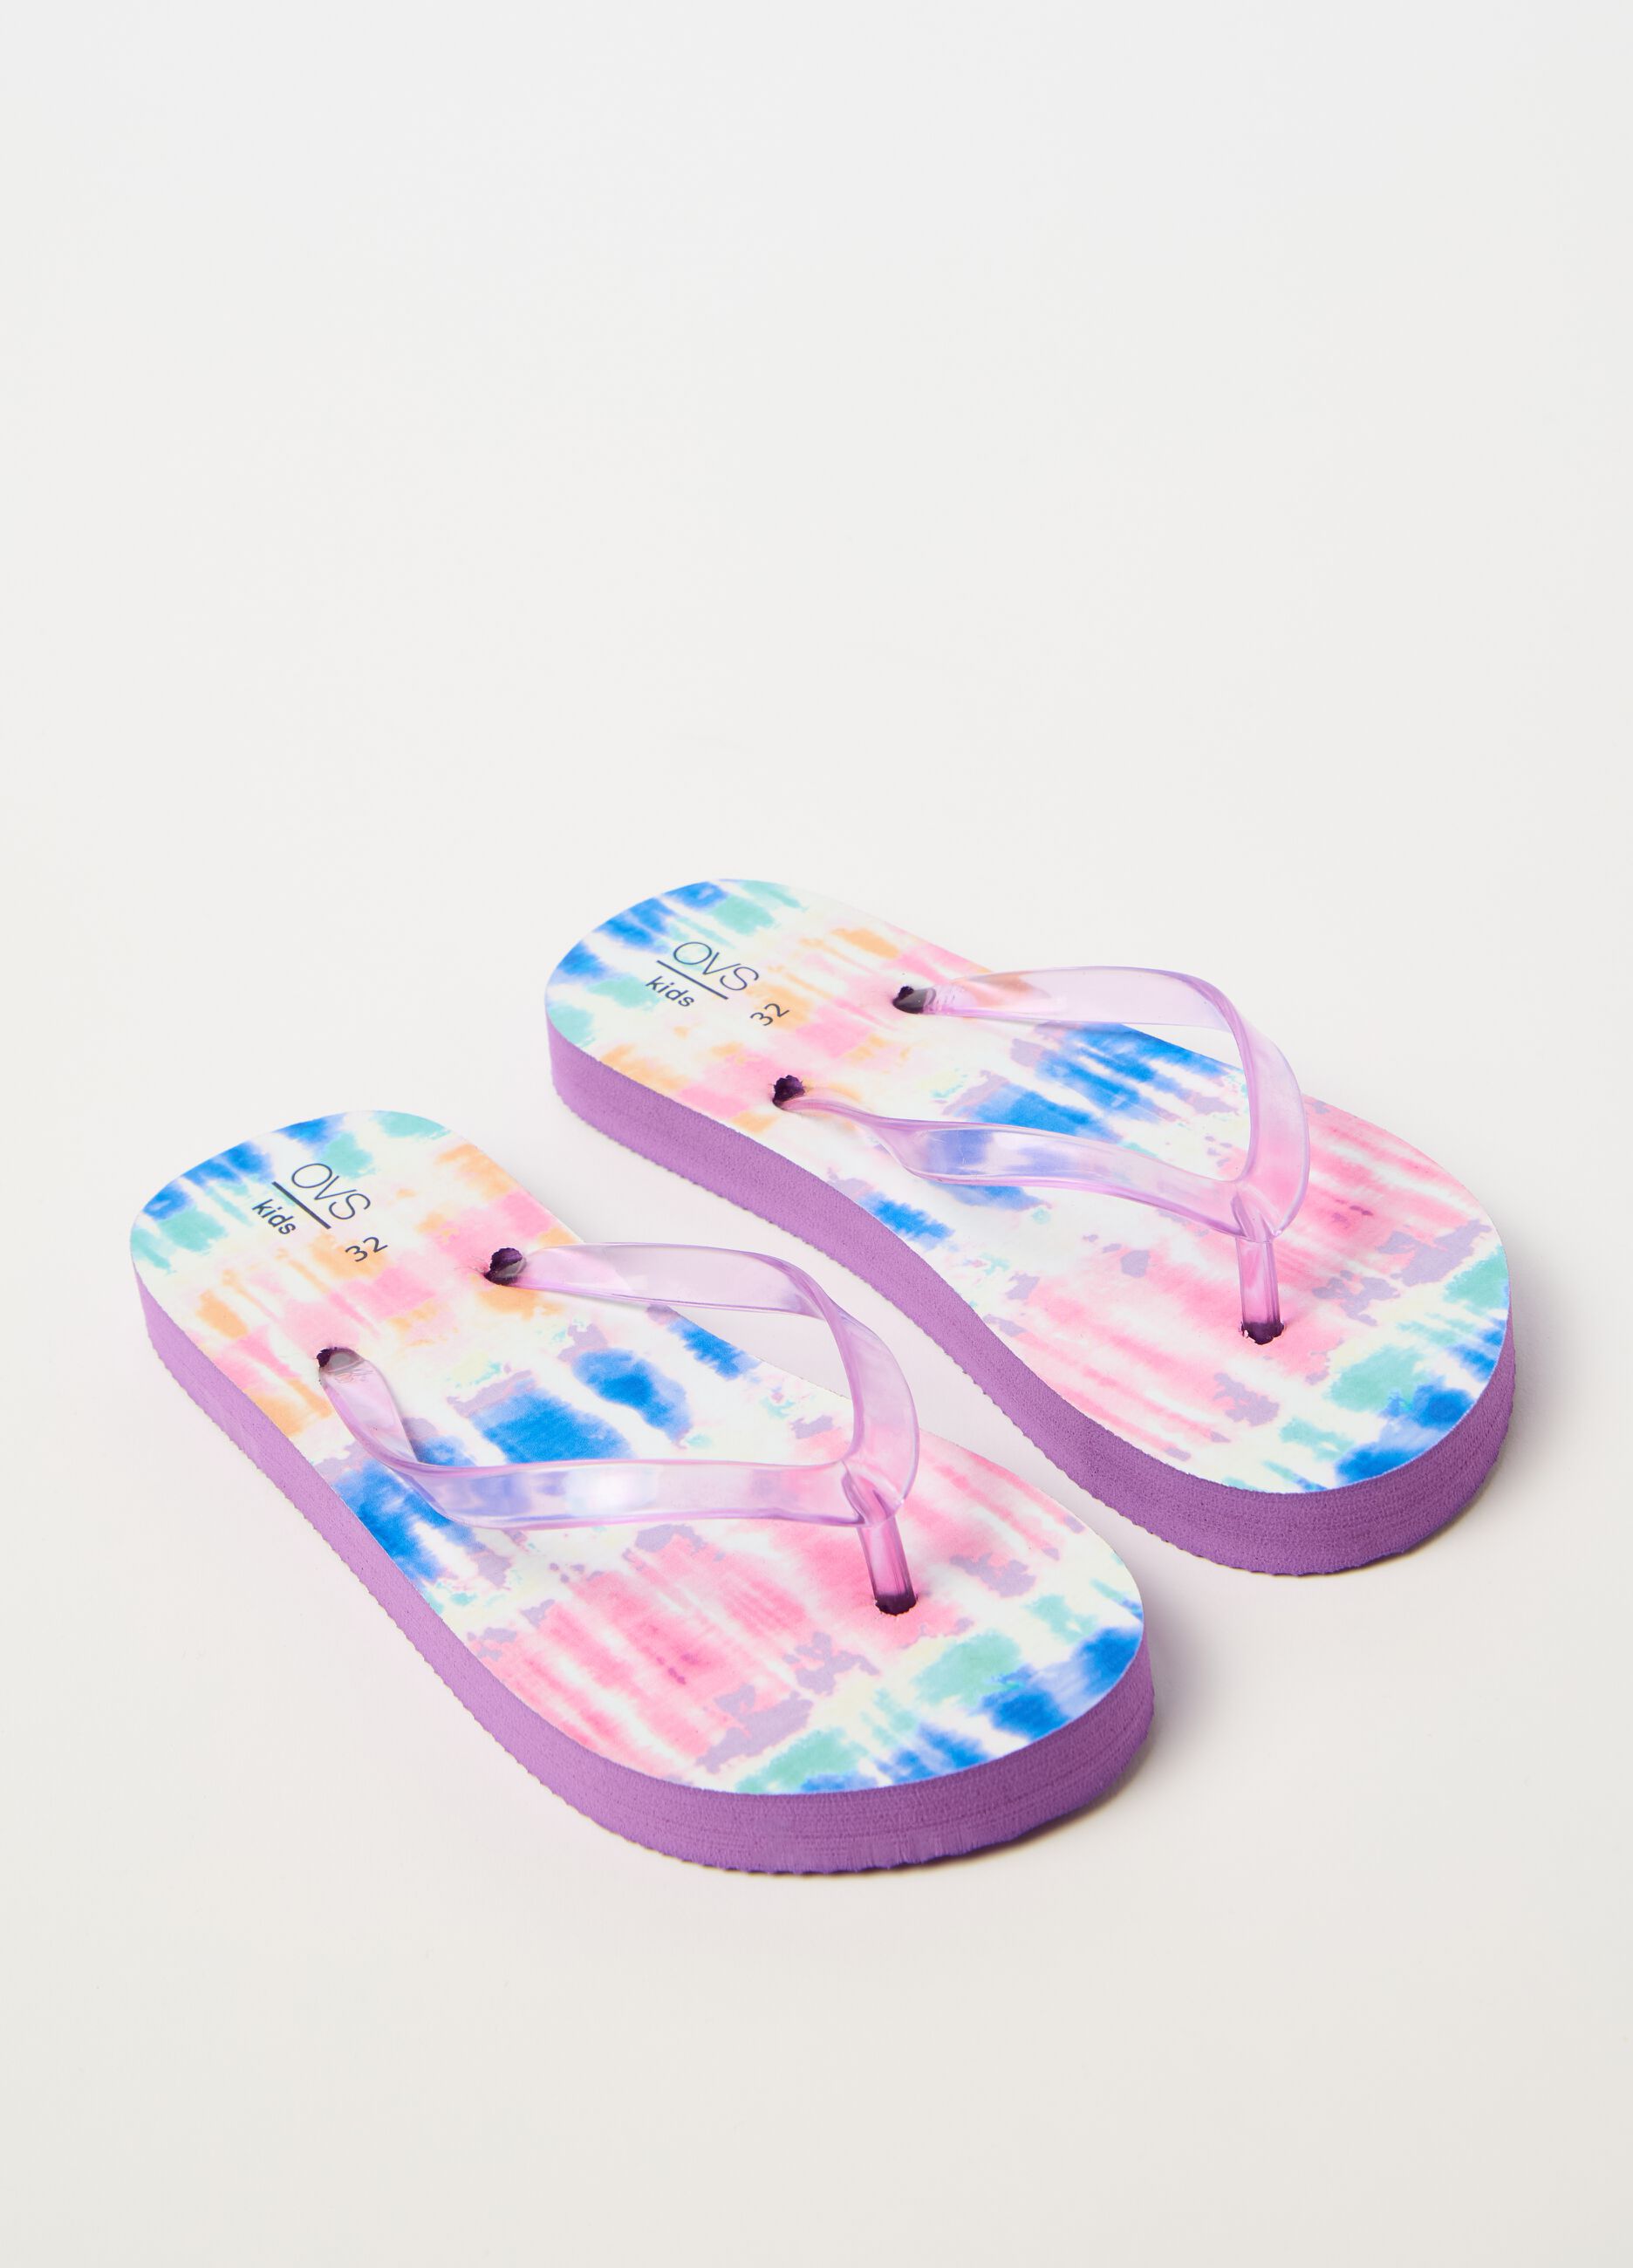 Flip flops with tie-dye pattern